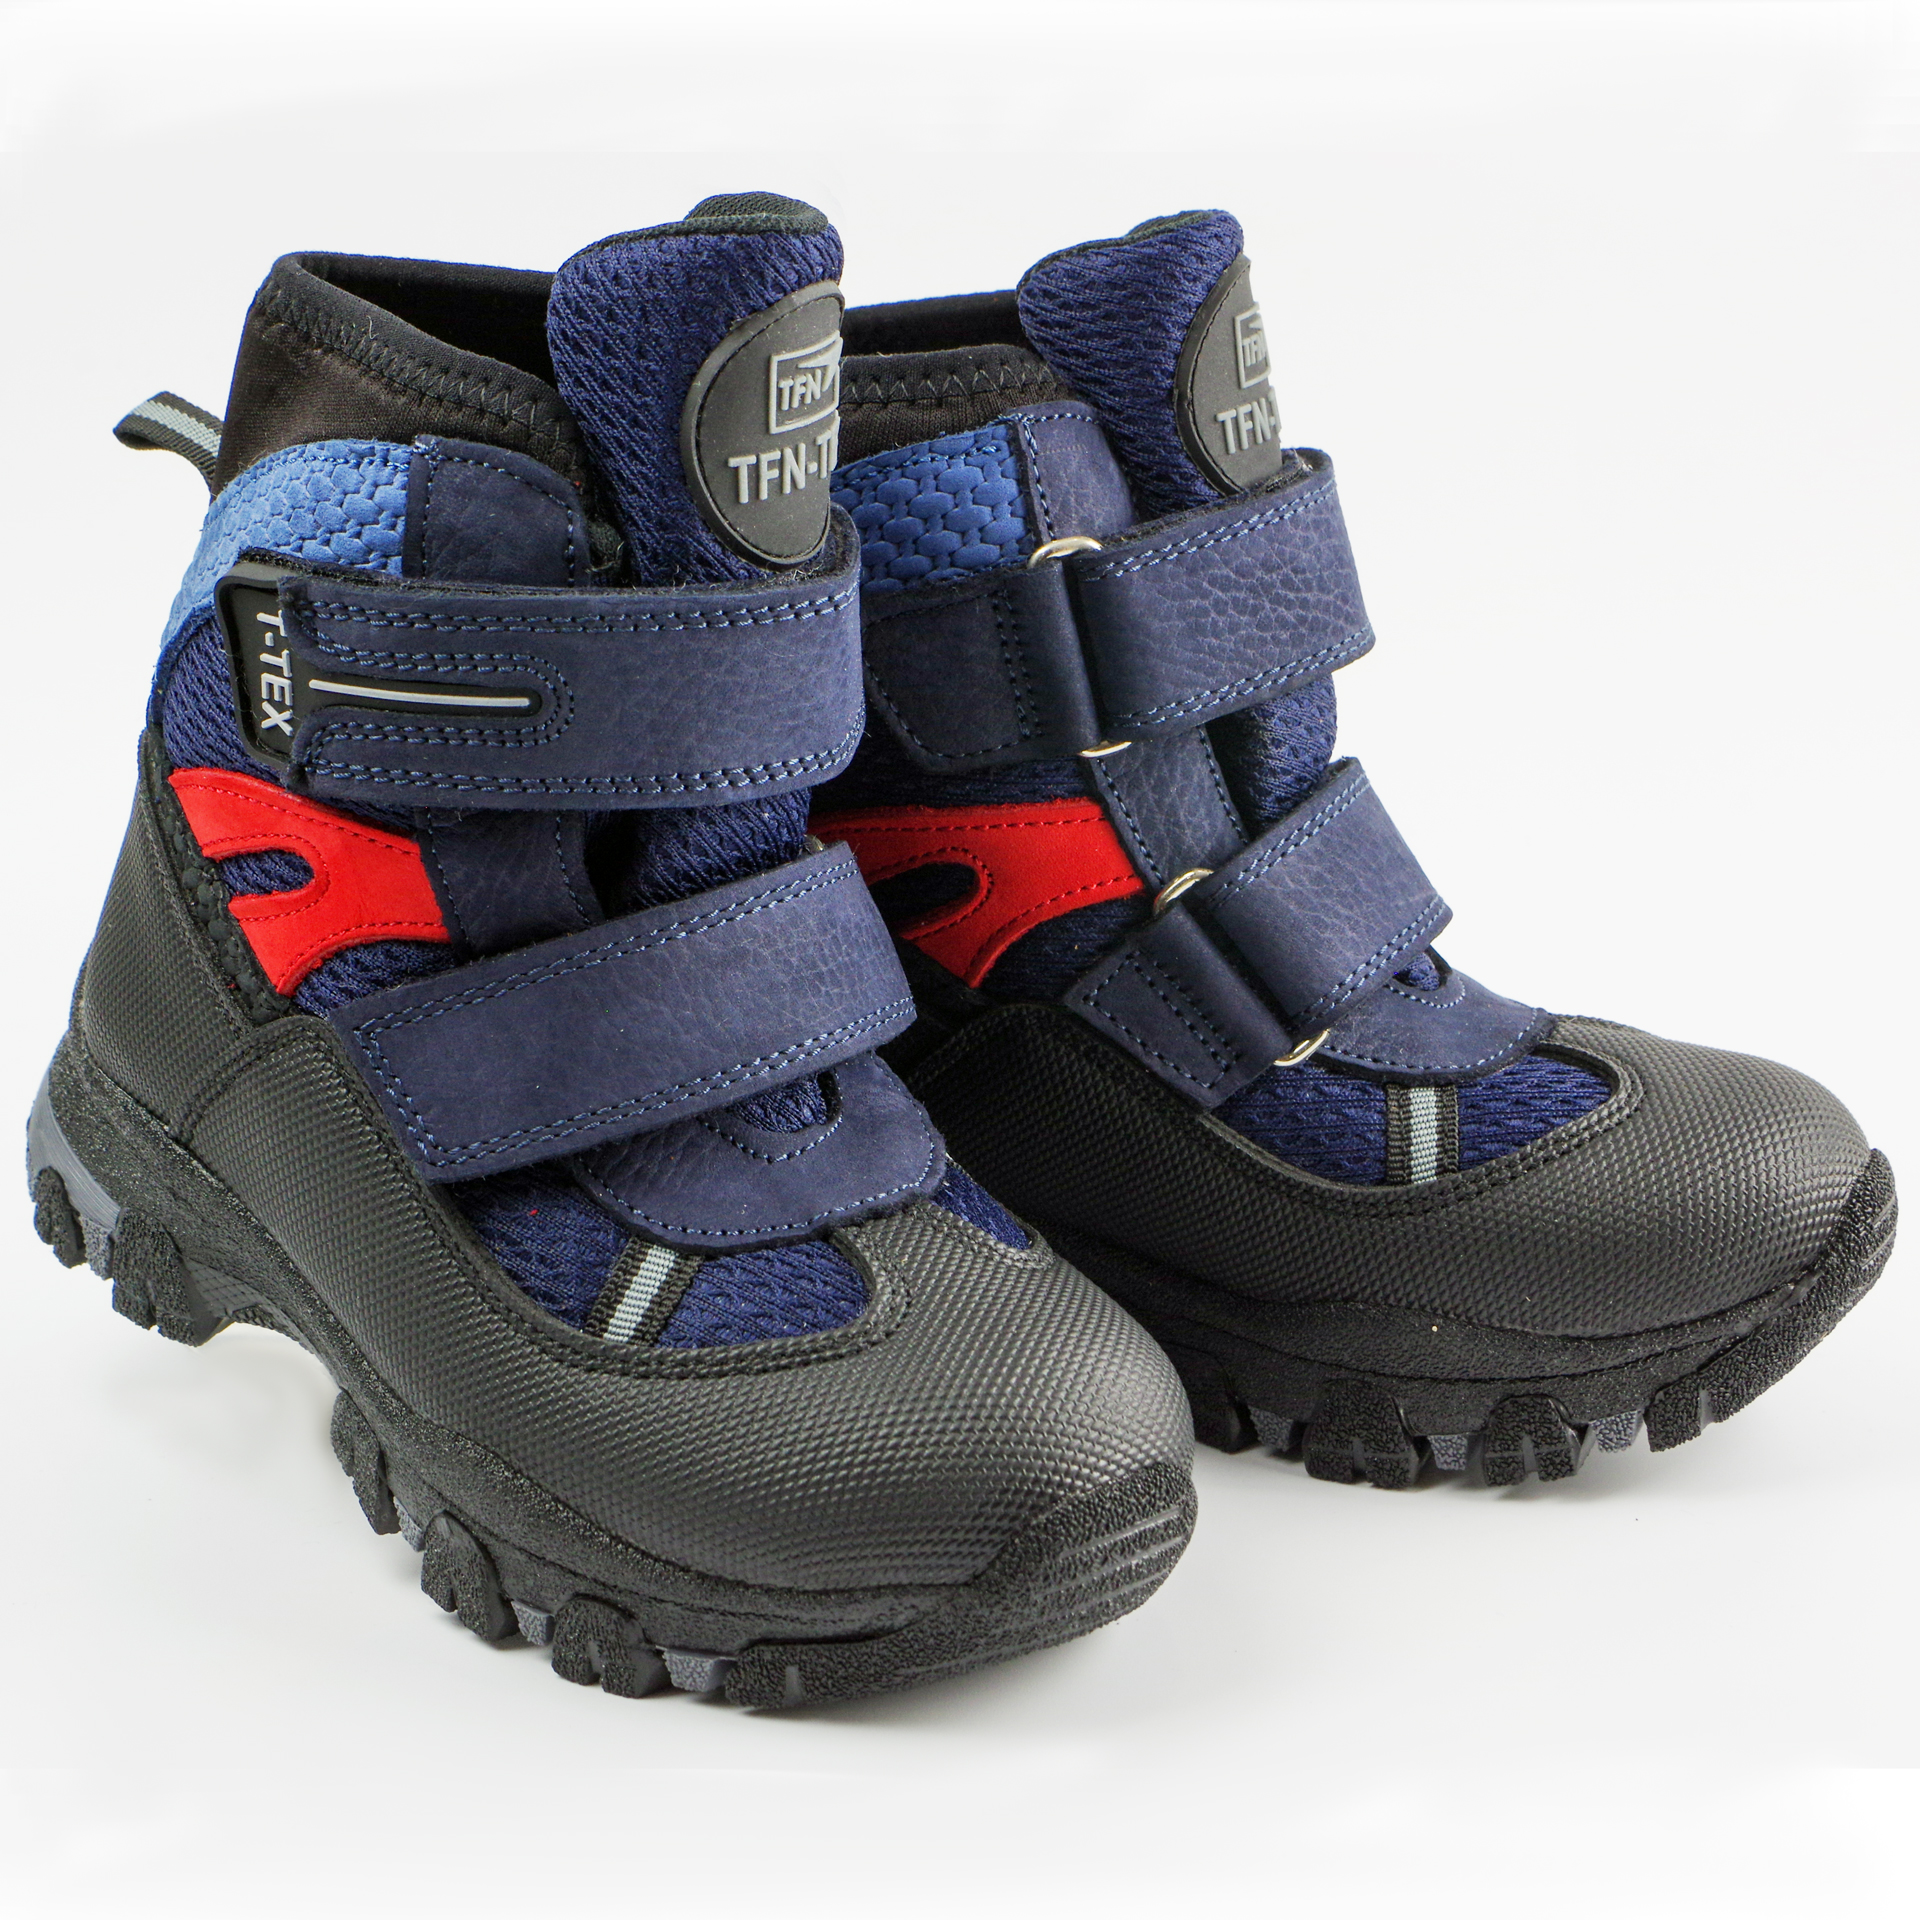 Зимові черевики дитячі (2148) для хлопчика, матеріал Мембрана, Темно-синій колір, 26-30 розміри – Sole Kids. Фото 2